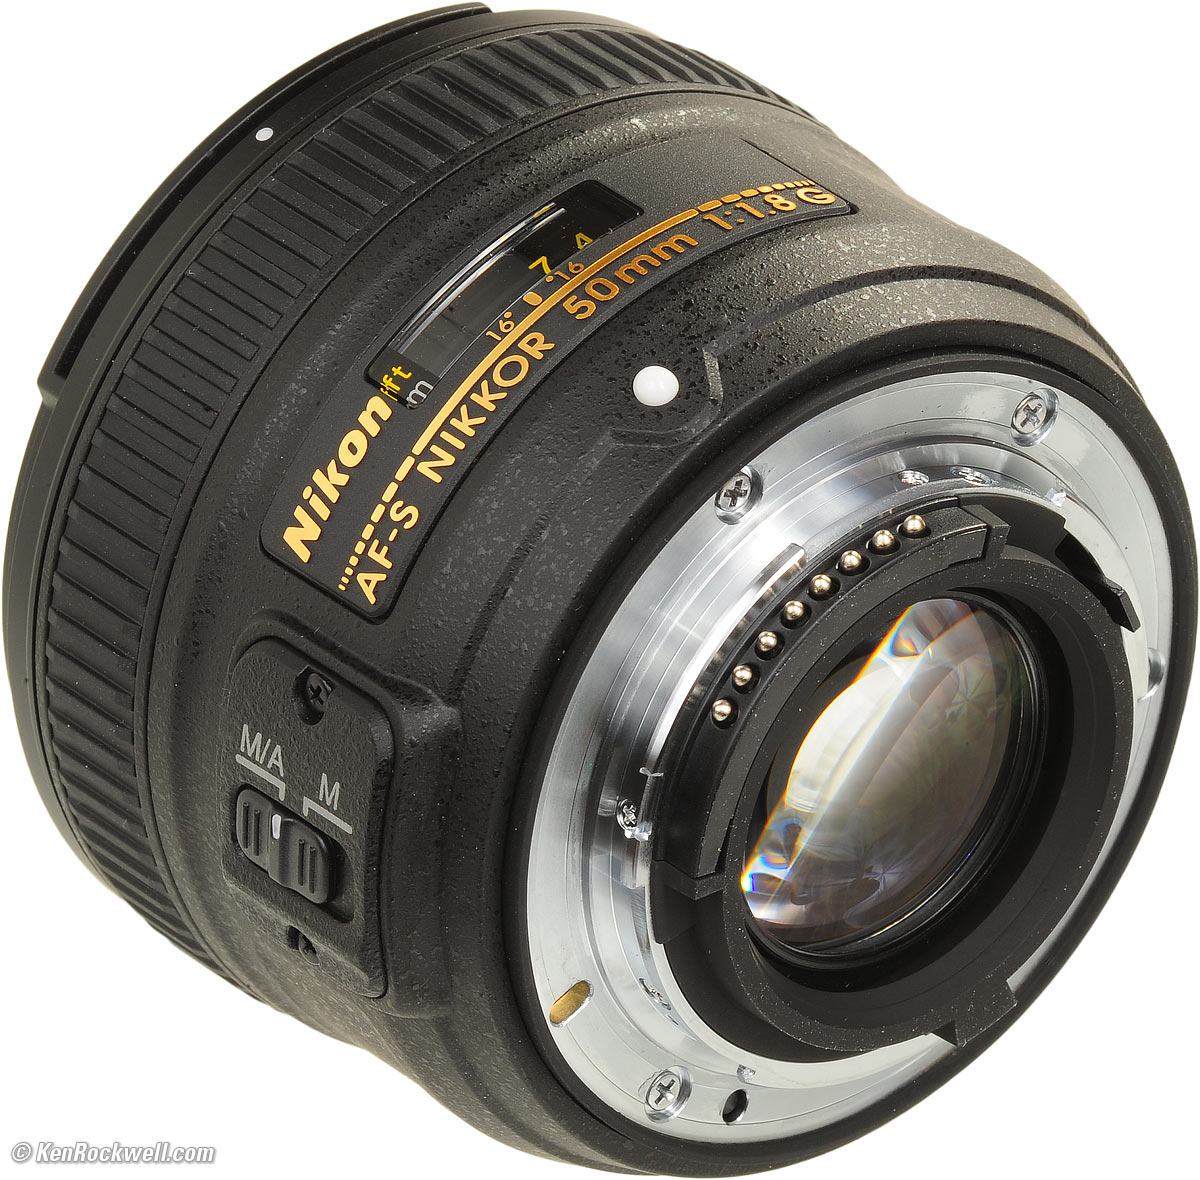  Nikon AF-S 50mm f/1.8G